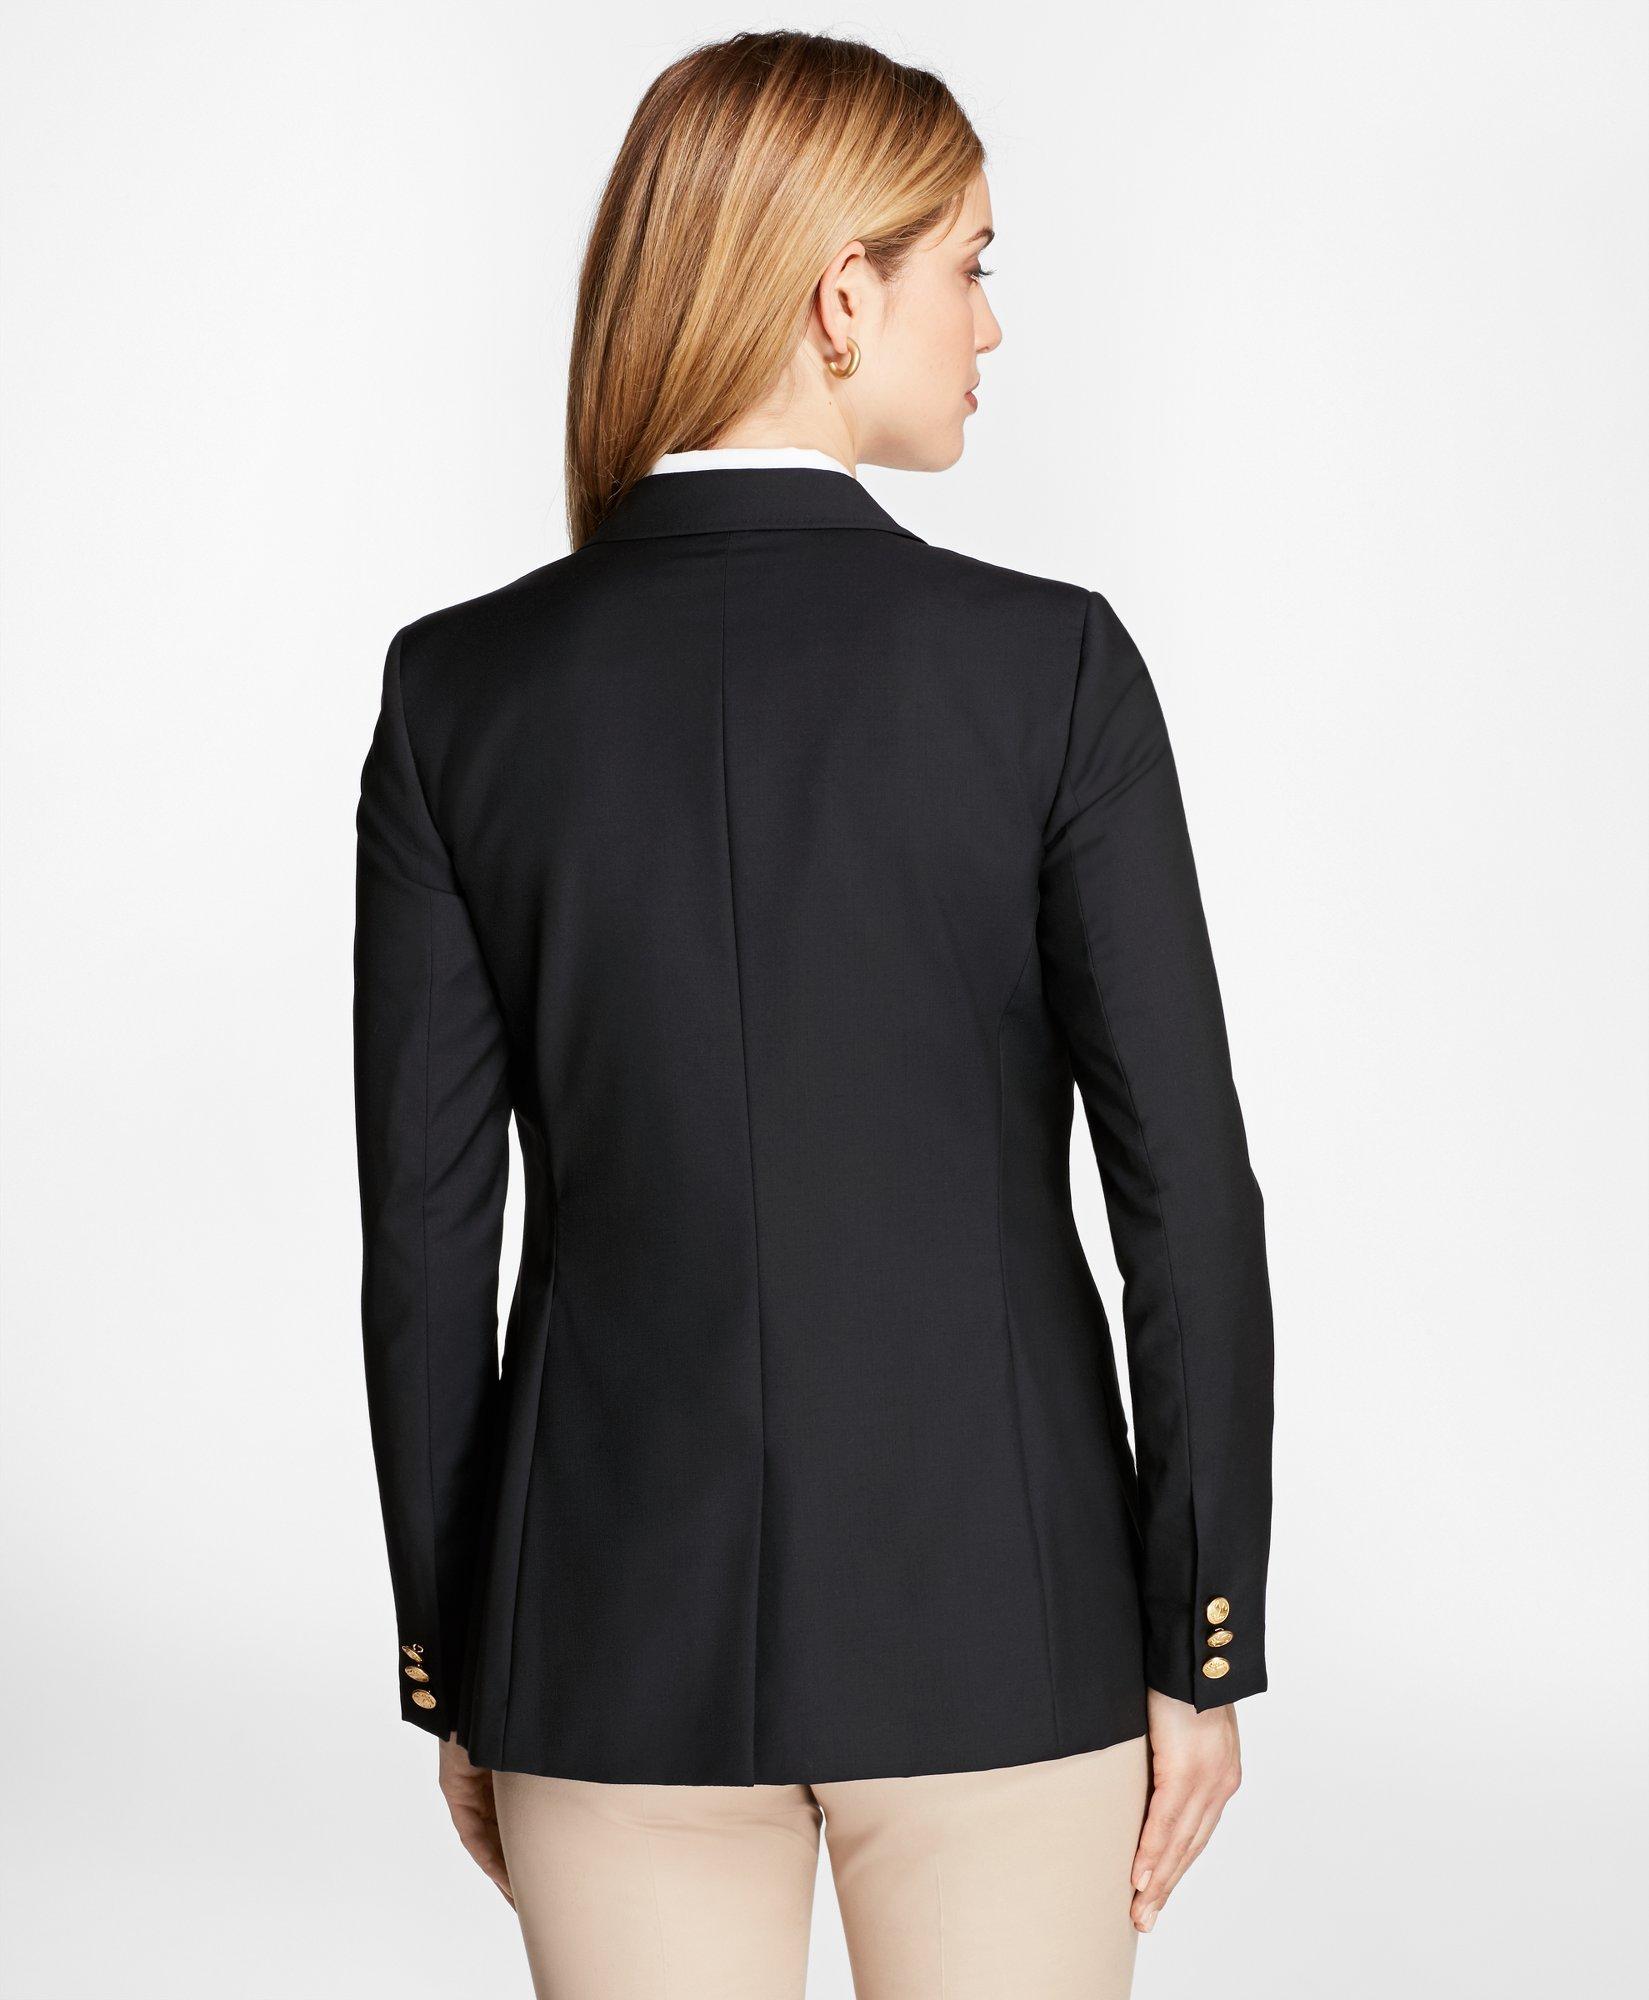 Executive Apparel Women's Navy Easywear Single Breasted 2-Button Blazer 2